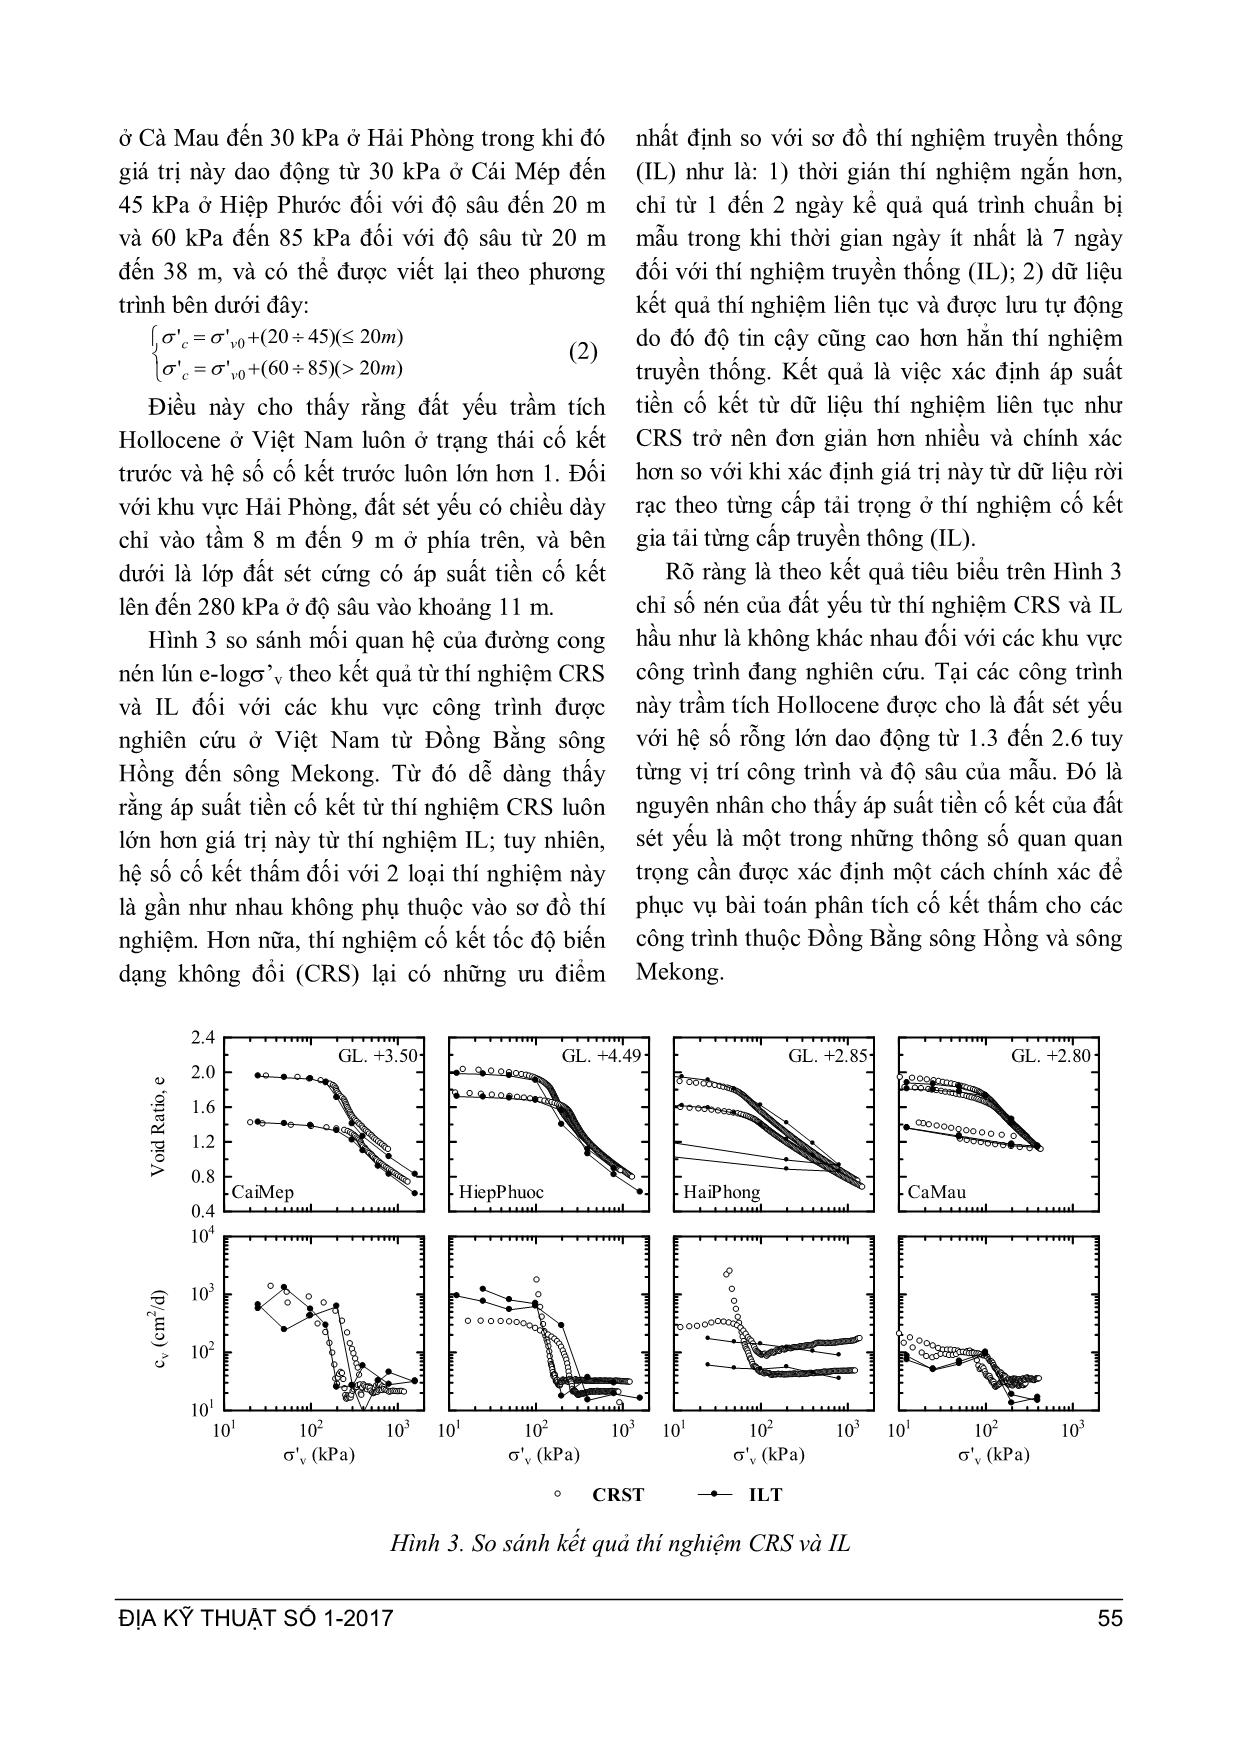 Xác định đặc trưng đất sét yếu Việt Nam theo thí nghiệm cố kết tốc độ biến dạng không đổi sử dụng trong phân tích bài cố kết thấm trang 5